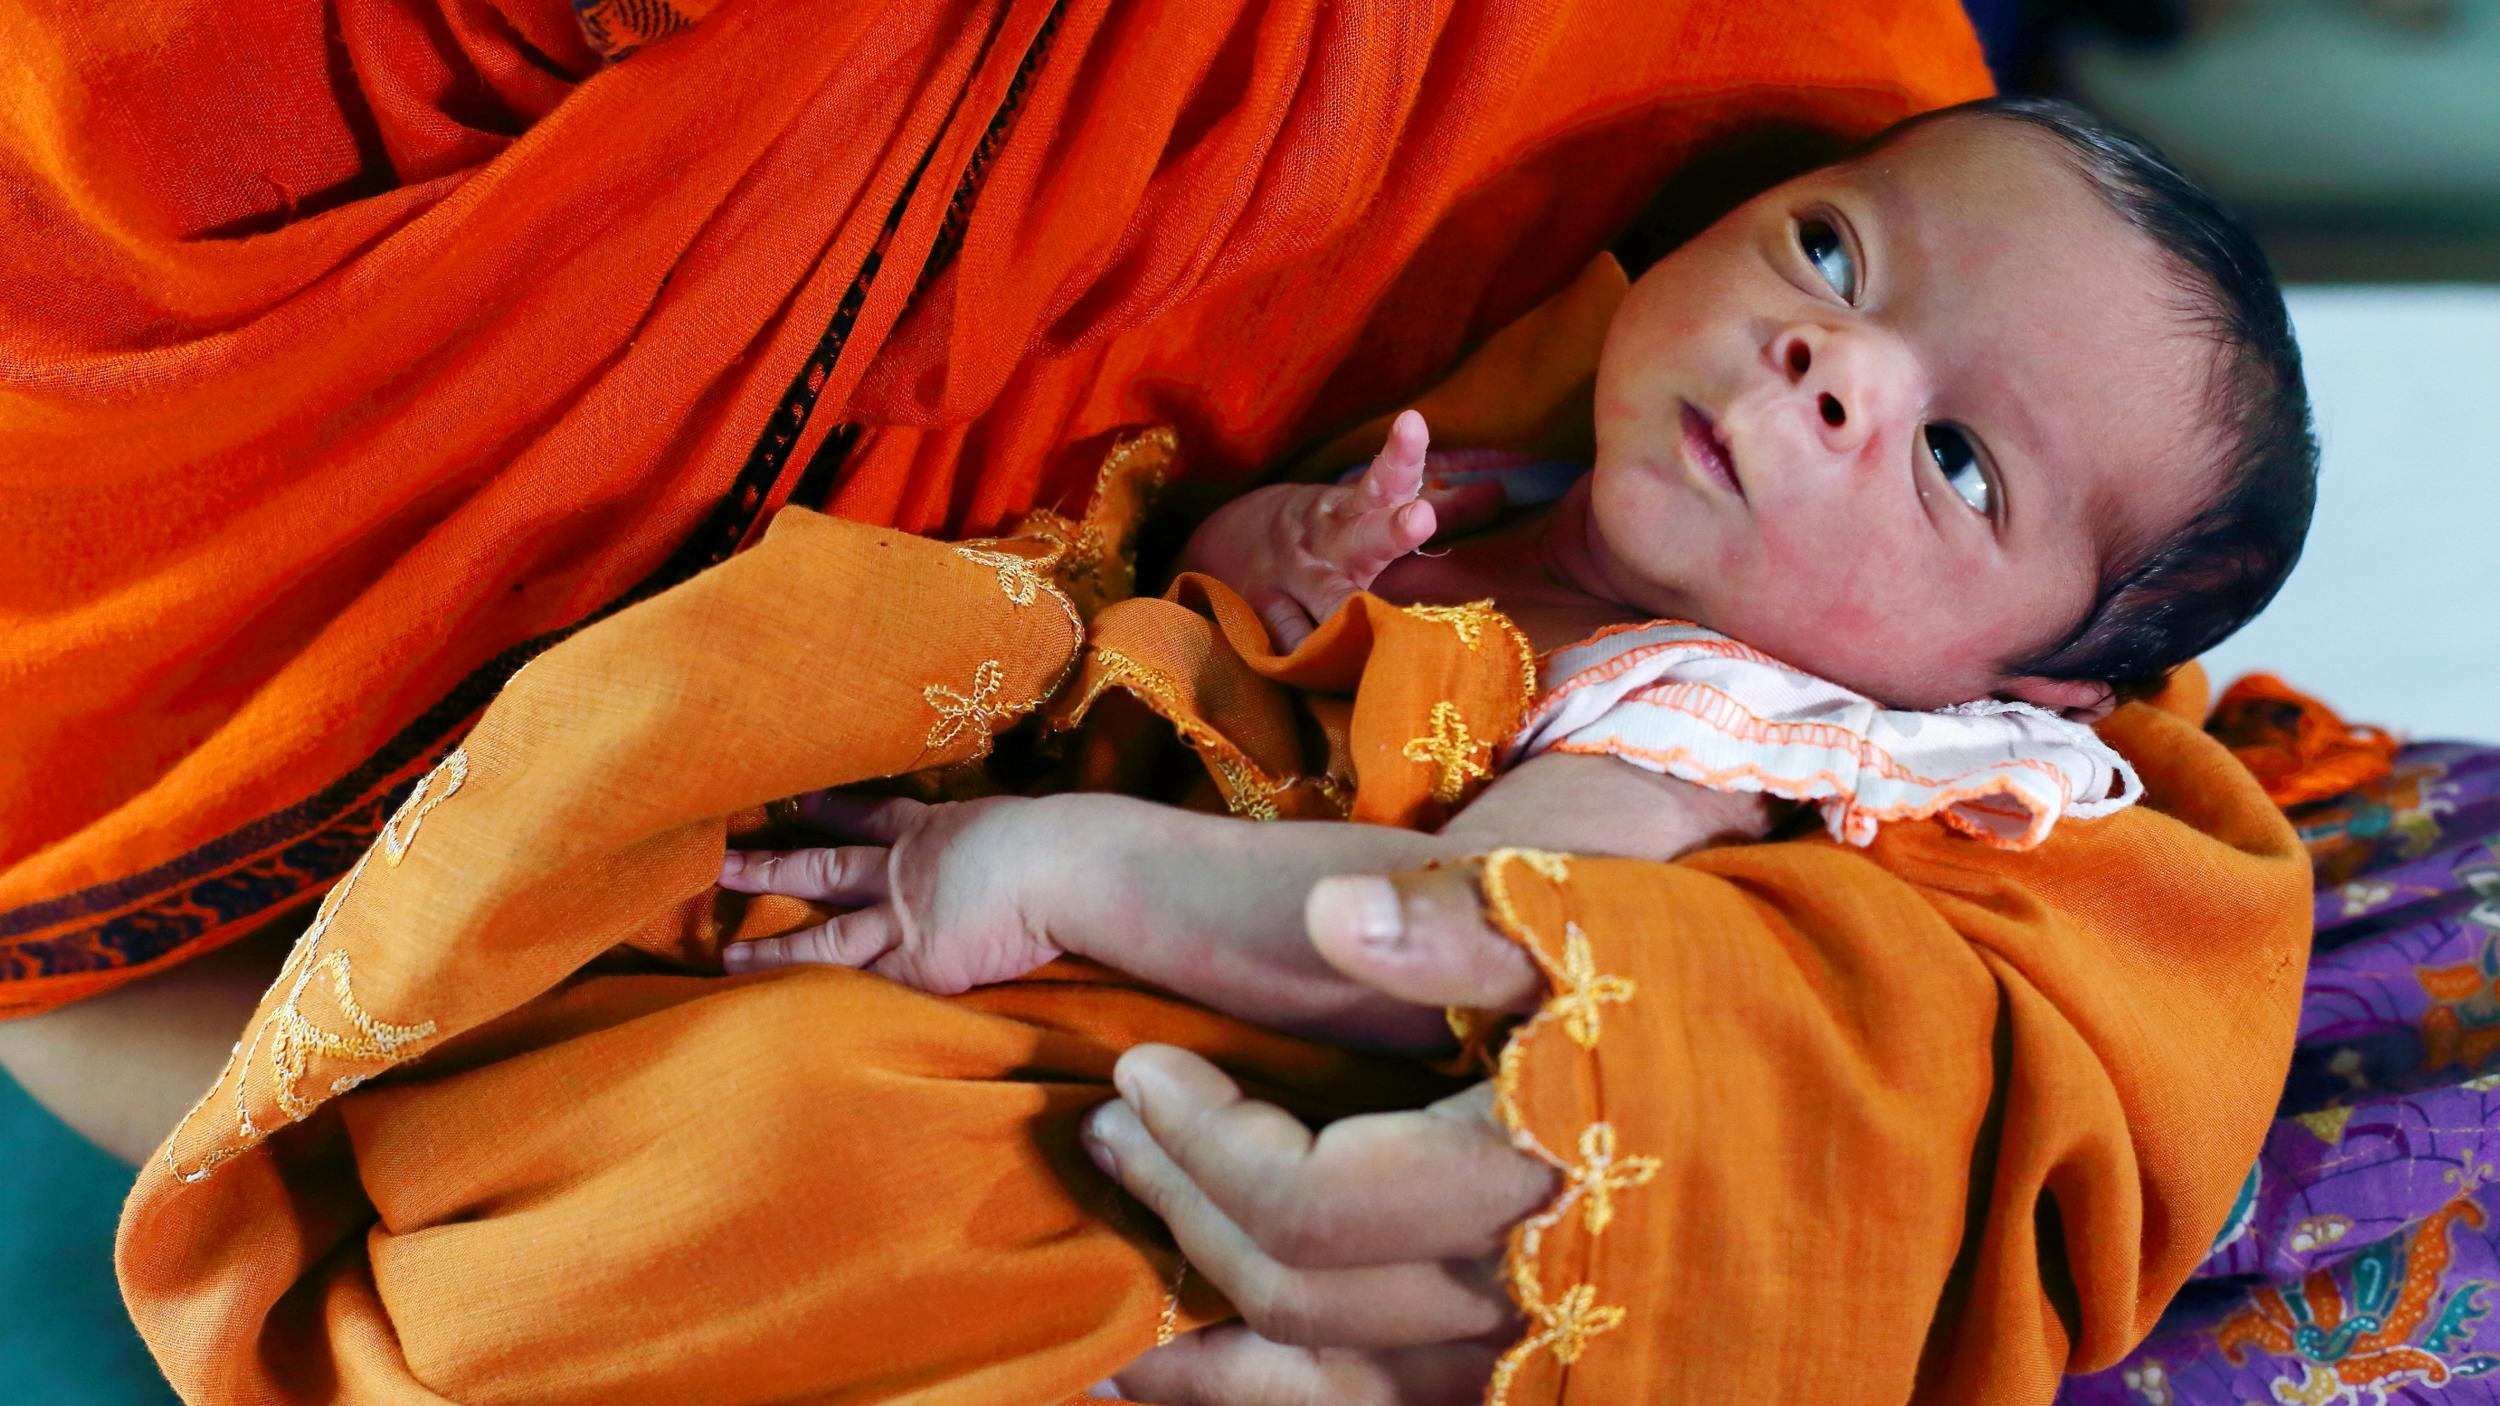 Wie mit Schwangeren umgegangen wird, erzählt viel über die Gleichberechtigung in einem Land